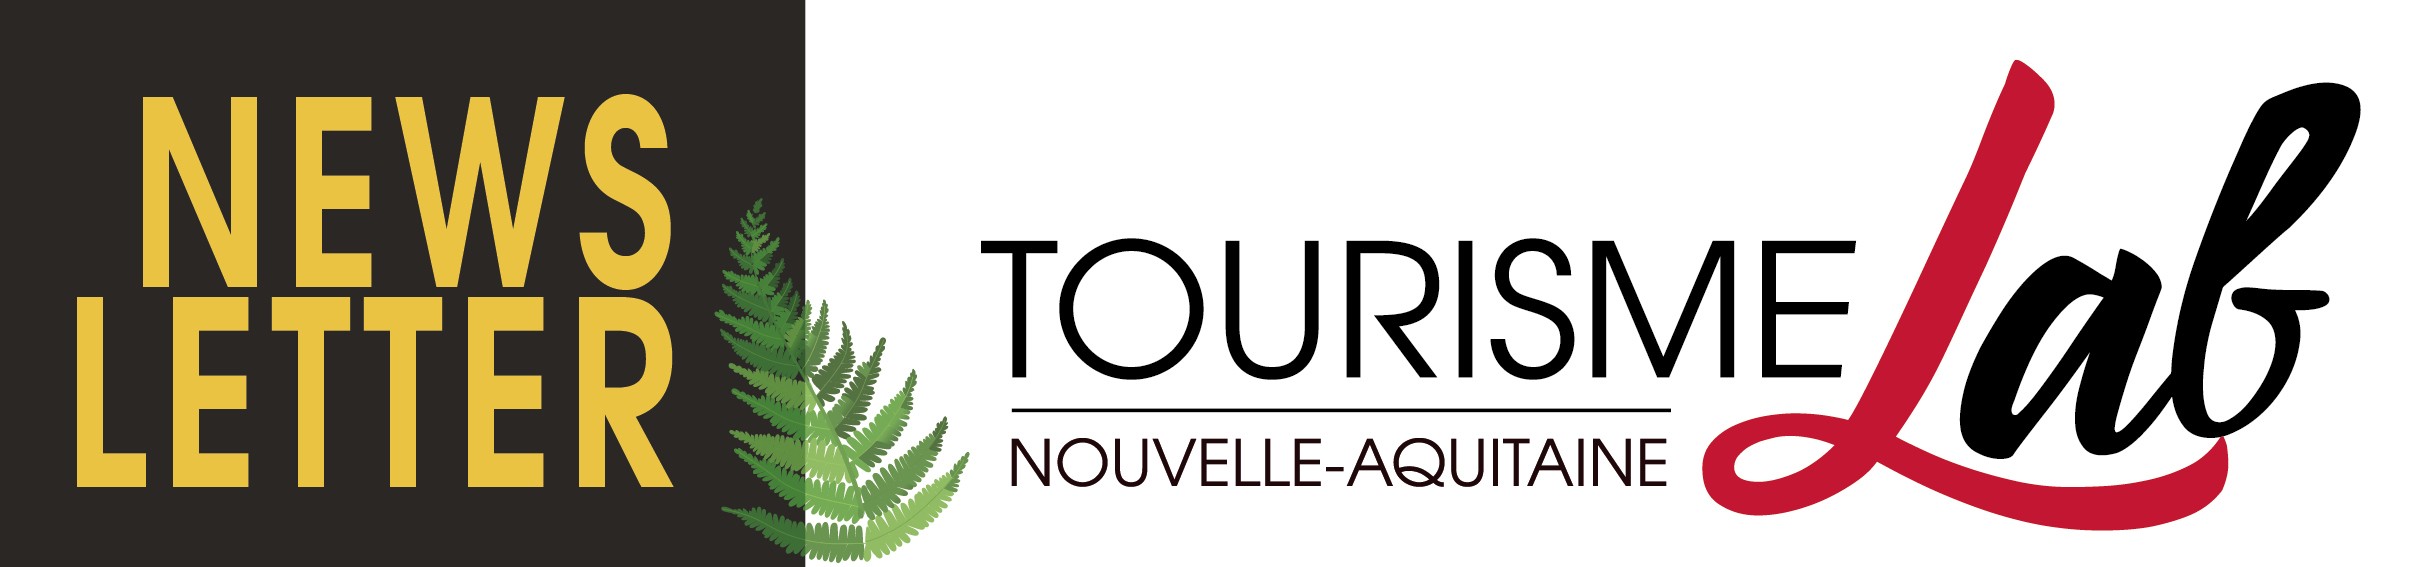 Newsletter Tourisme Lab Nouvelle-Aquitaine